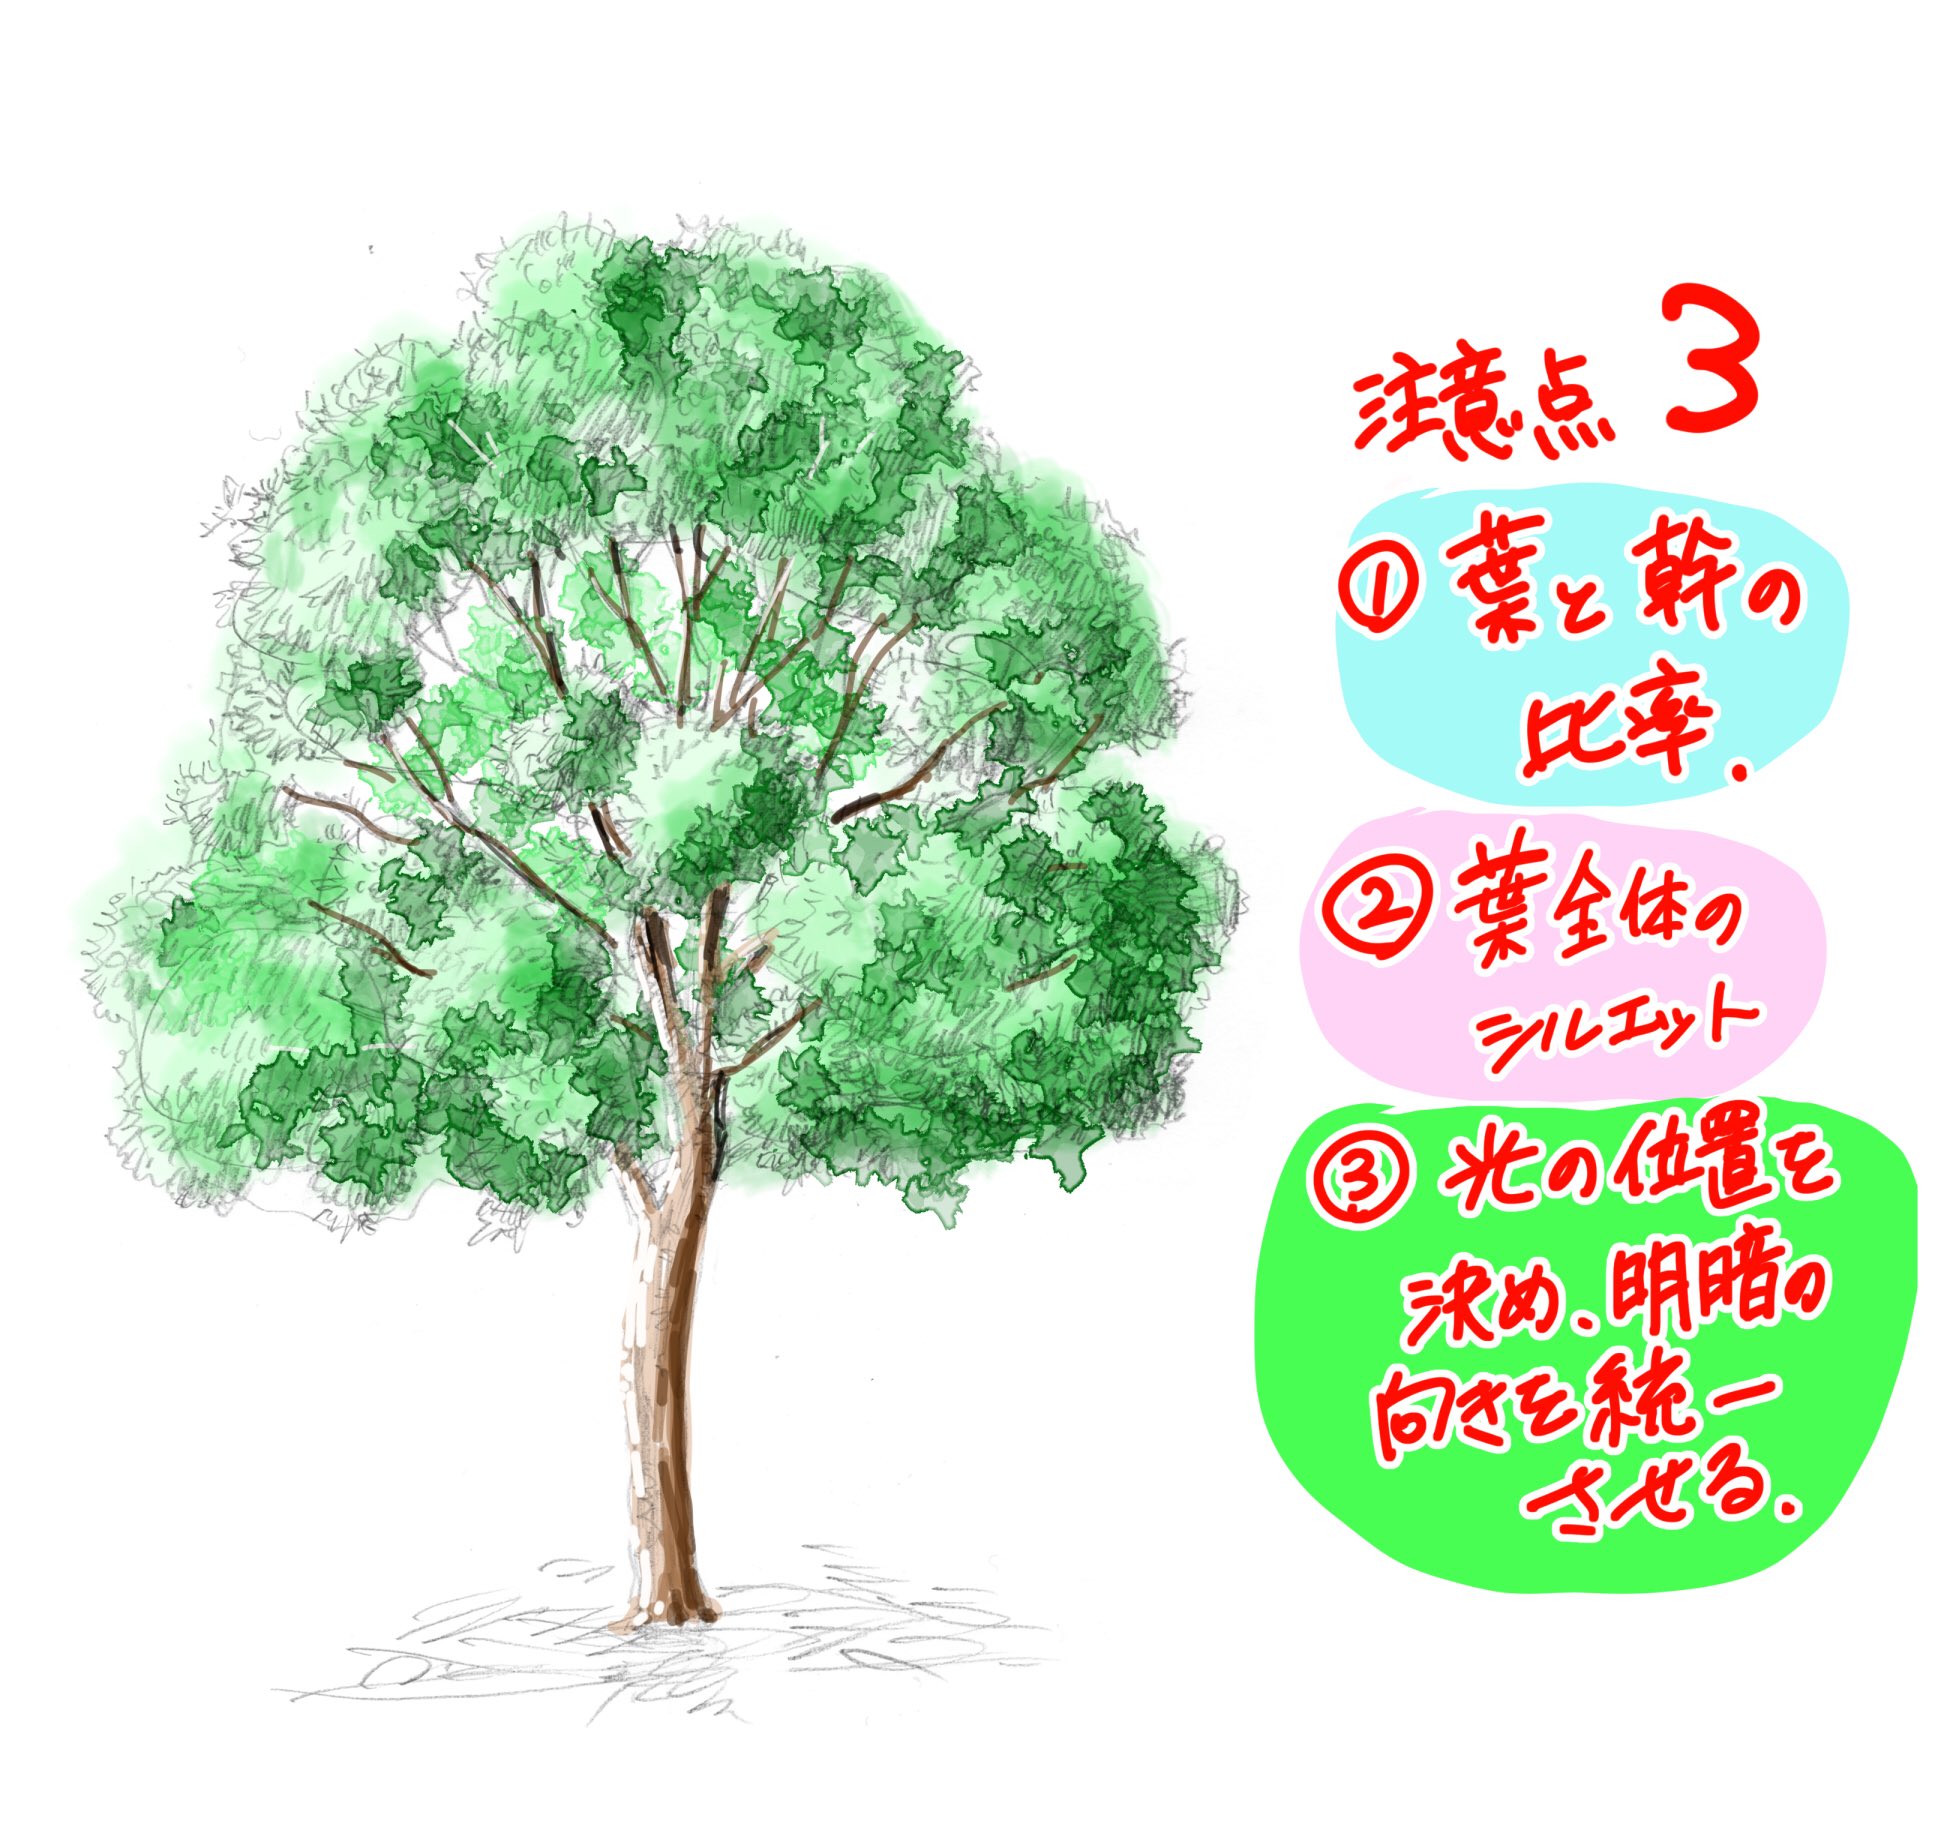 吉村拓也 イラスト講座 イラスト初心者でもすぐ描ける 木の描き方 たった2分間で立体感を1 引き出す 樹木の解説マニュアル 木が描けない人は見てみてね T Co 8ymrg3bilr Twitter